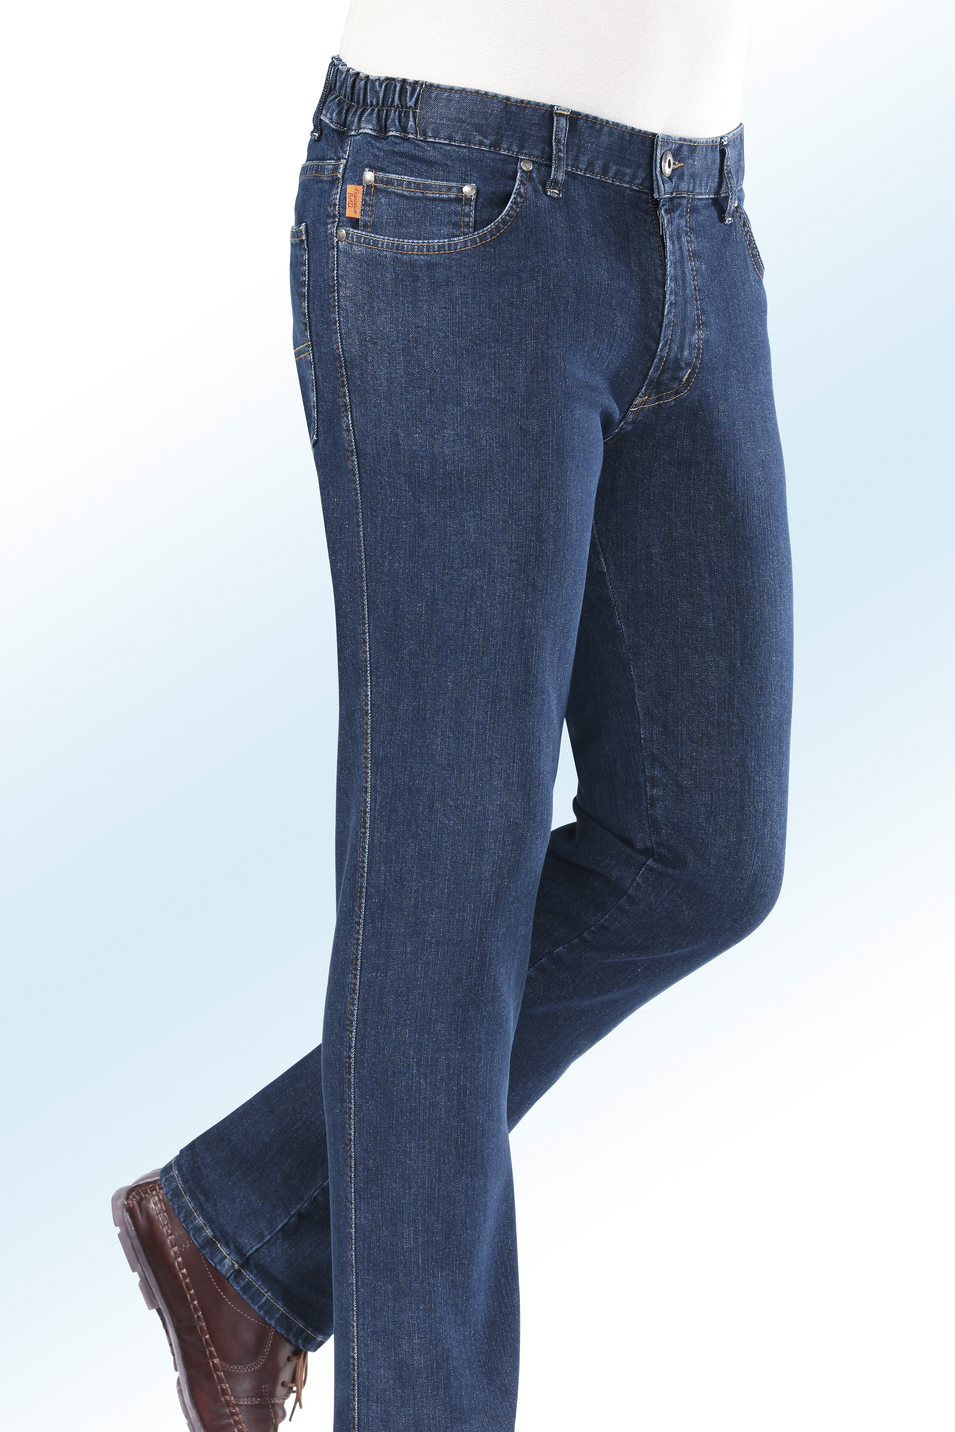 "Francesco Botti"-Jeans mit Dehnbundeinsätzen in 3 Farben, Jeansblau, Größe 56 von FRANCESCO BOTTI